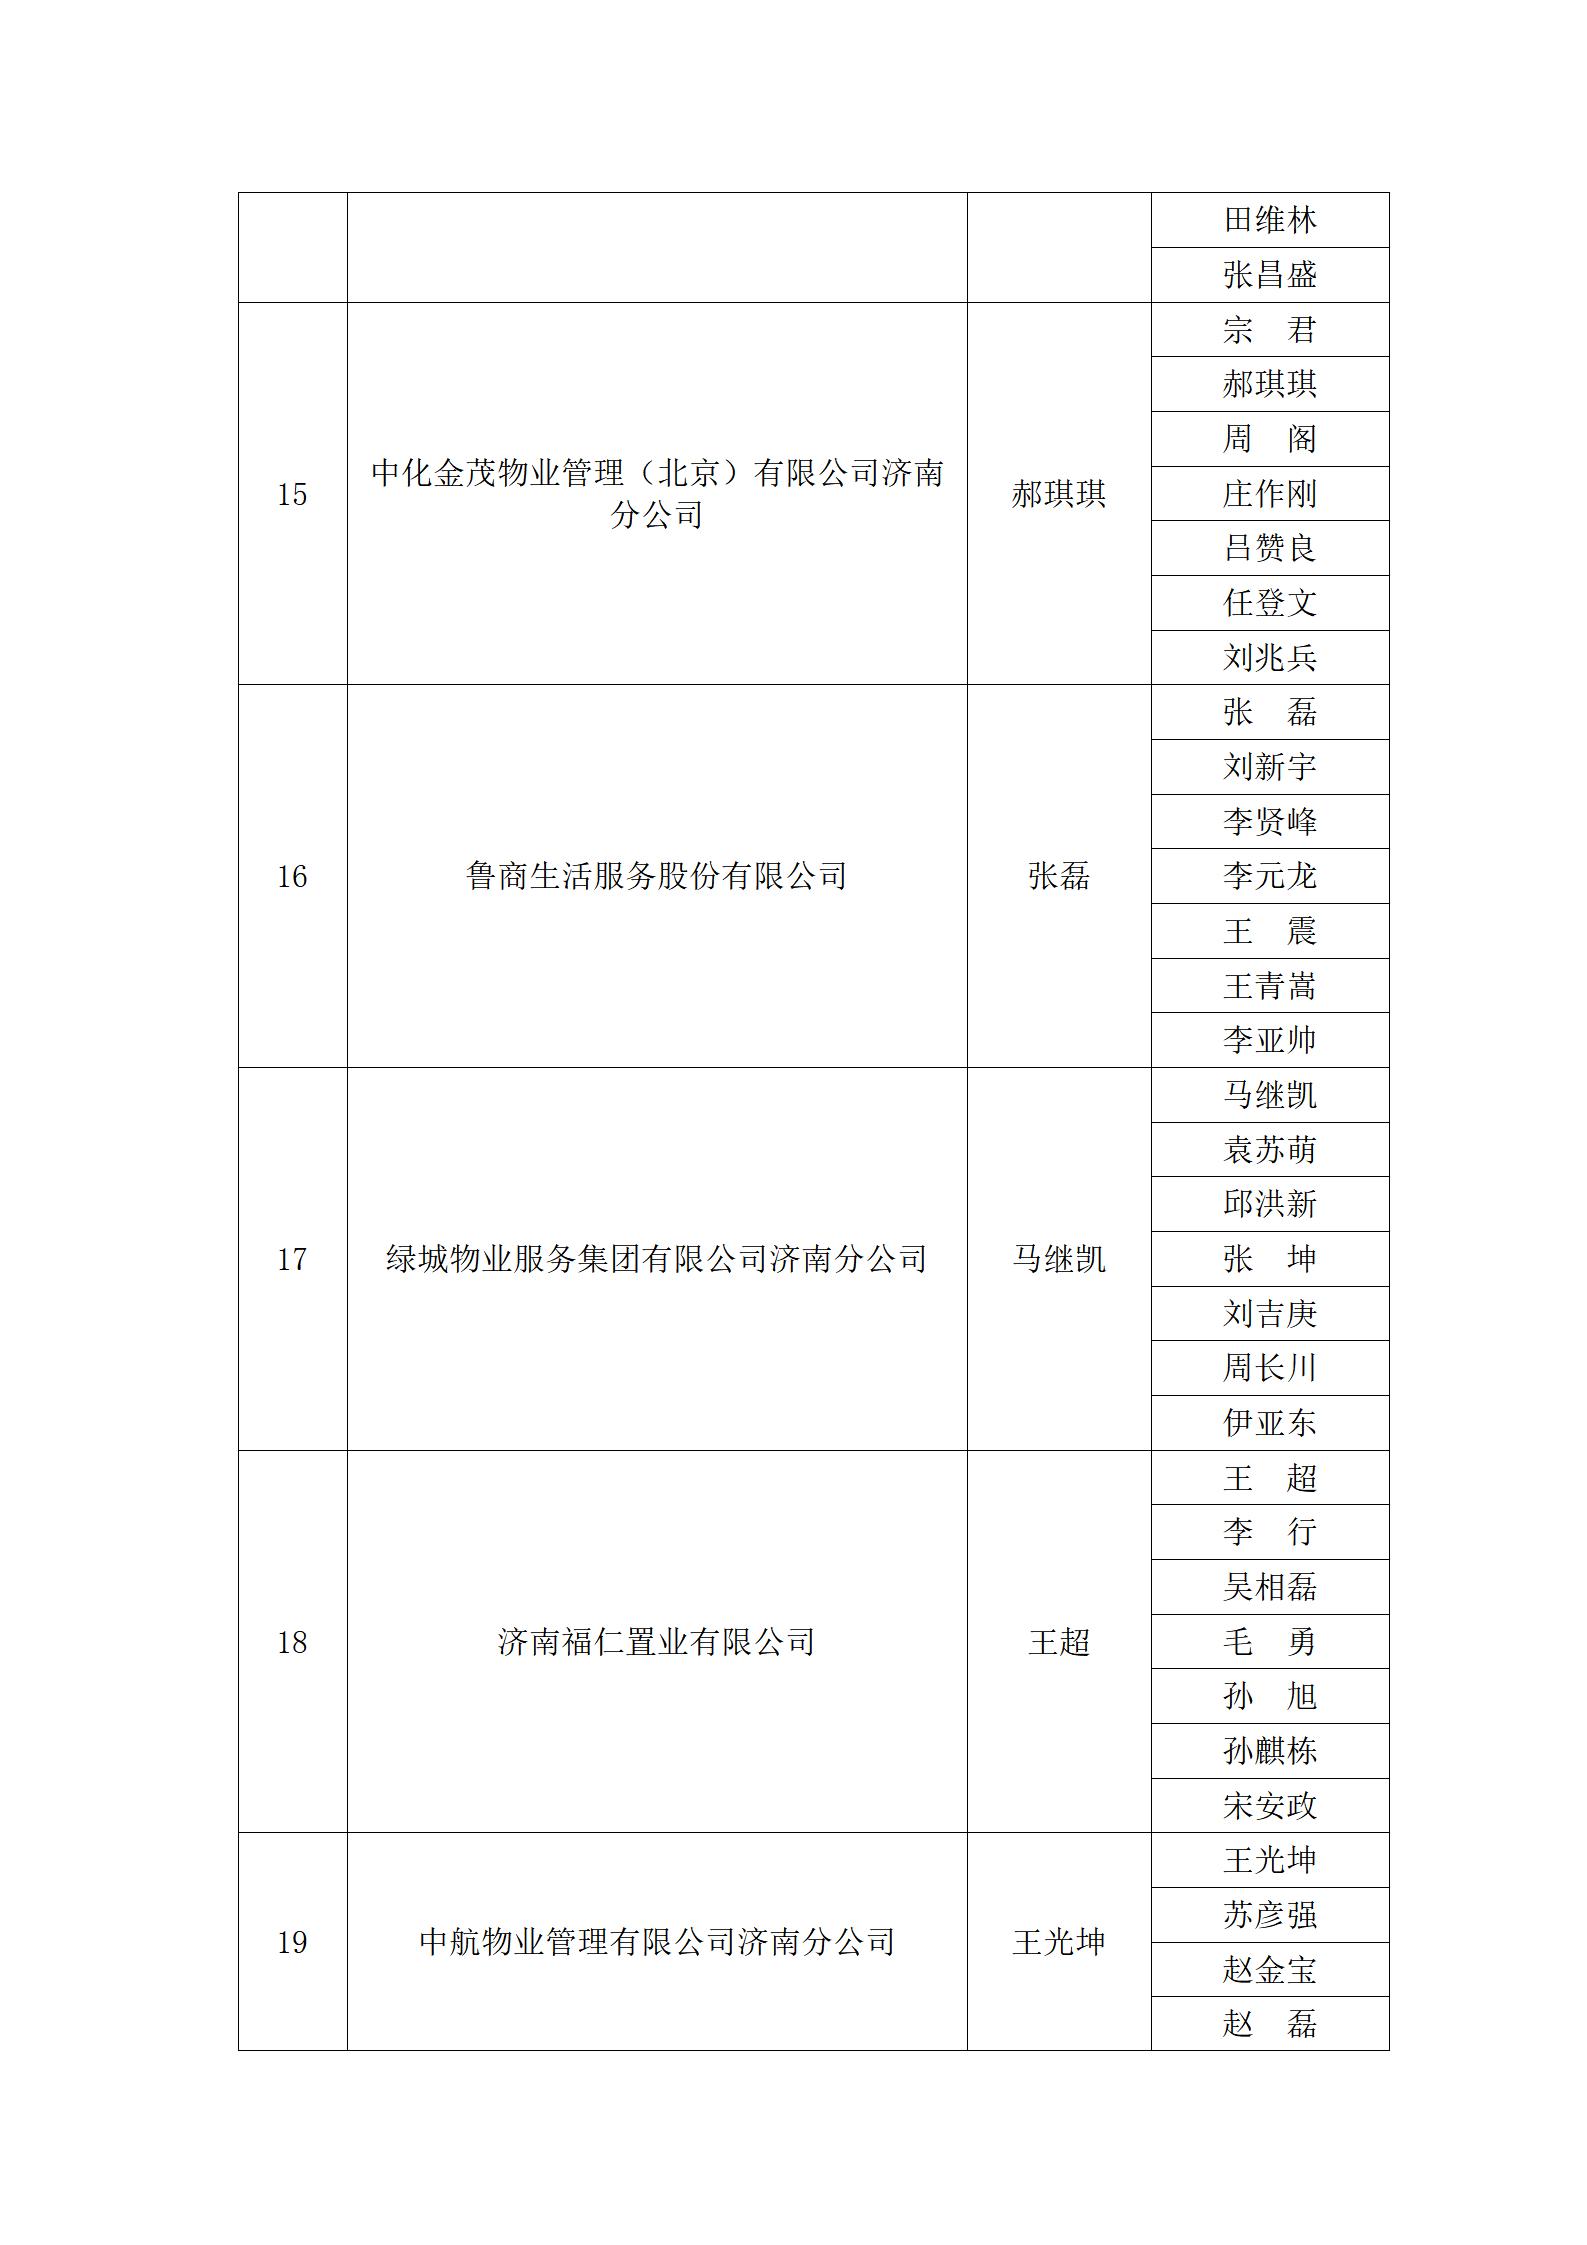 关于“明德杯”第六届济南市物业服务行业职业技能竞赛选手名单的公示_20